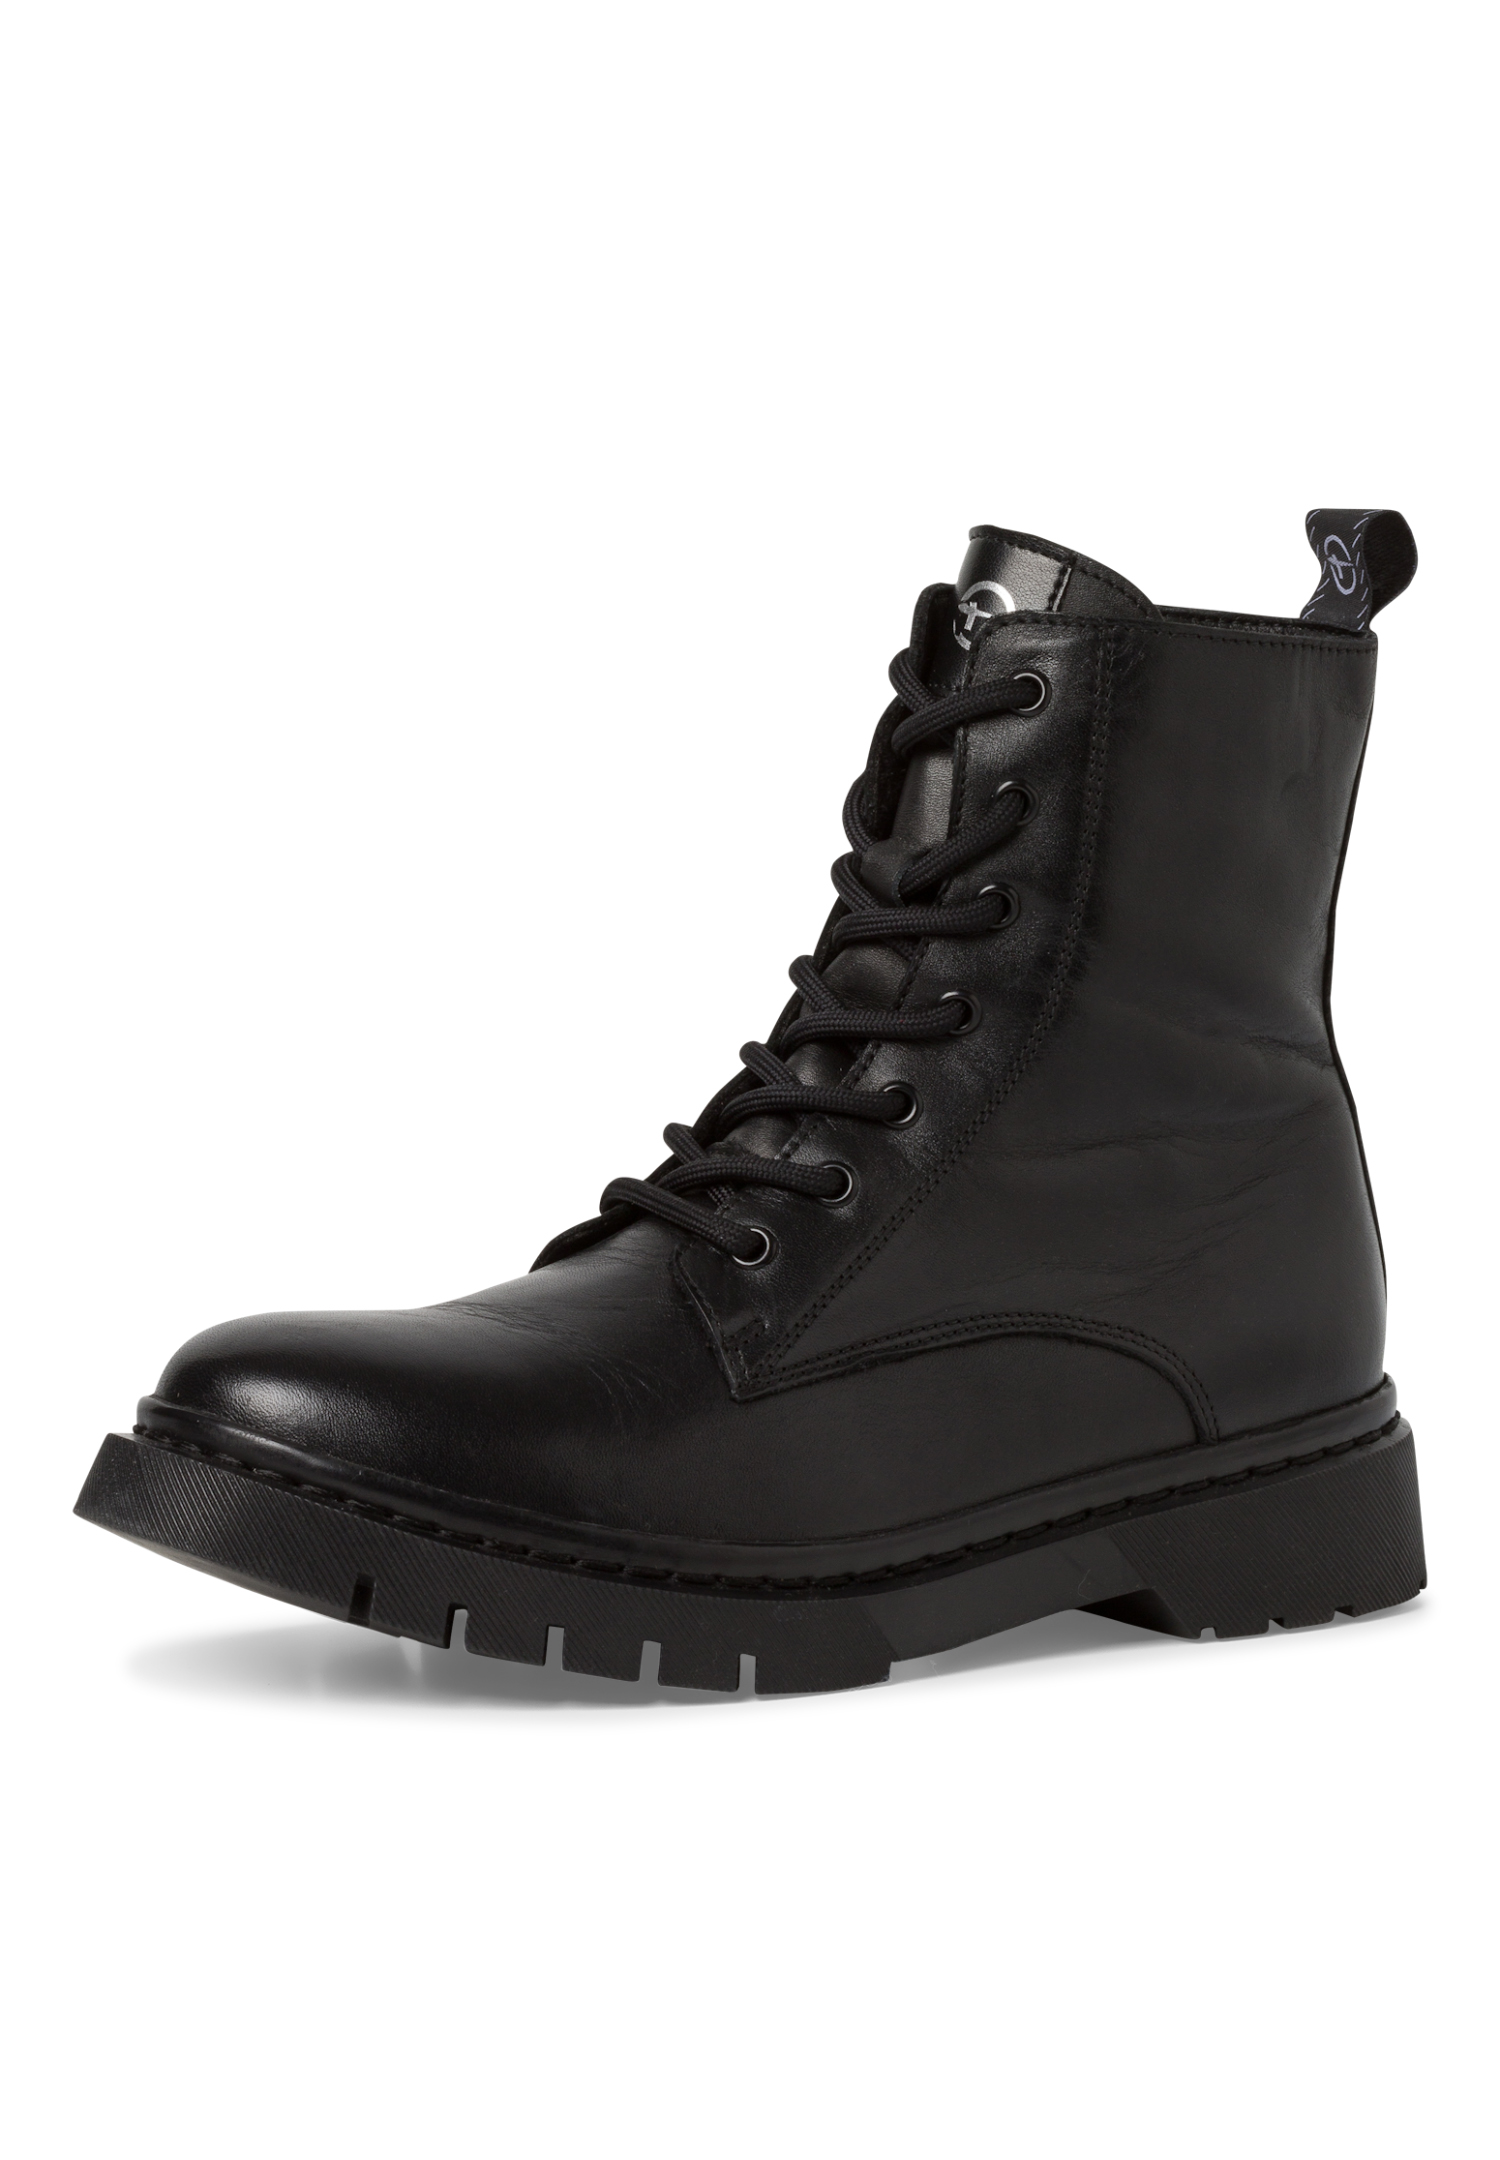 Tamaris Damen Lederstiefel Stiefelette Frauen Ankle Boots schwarz M2526941